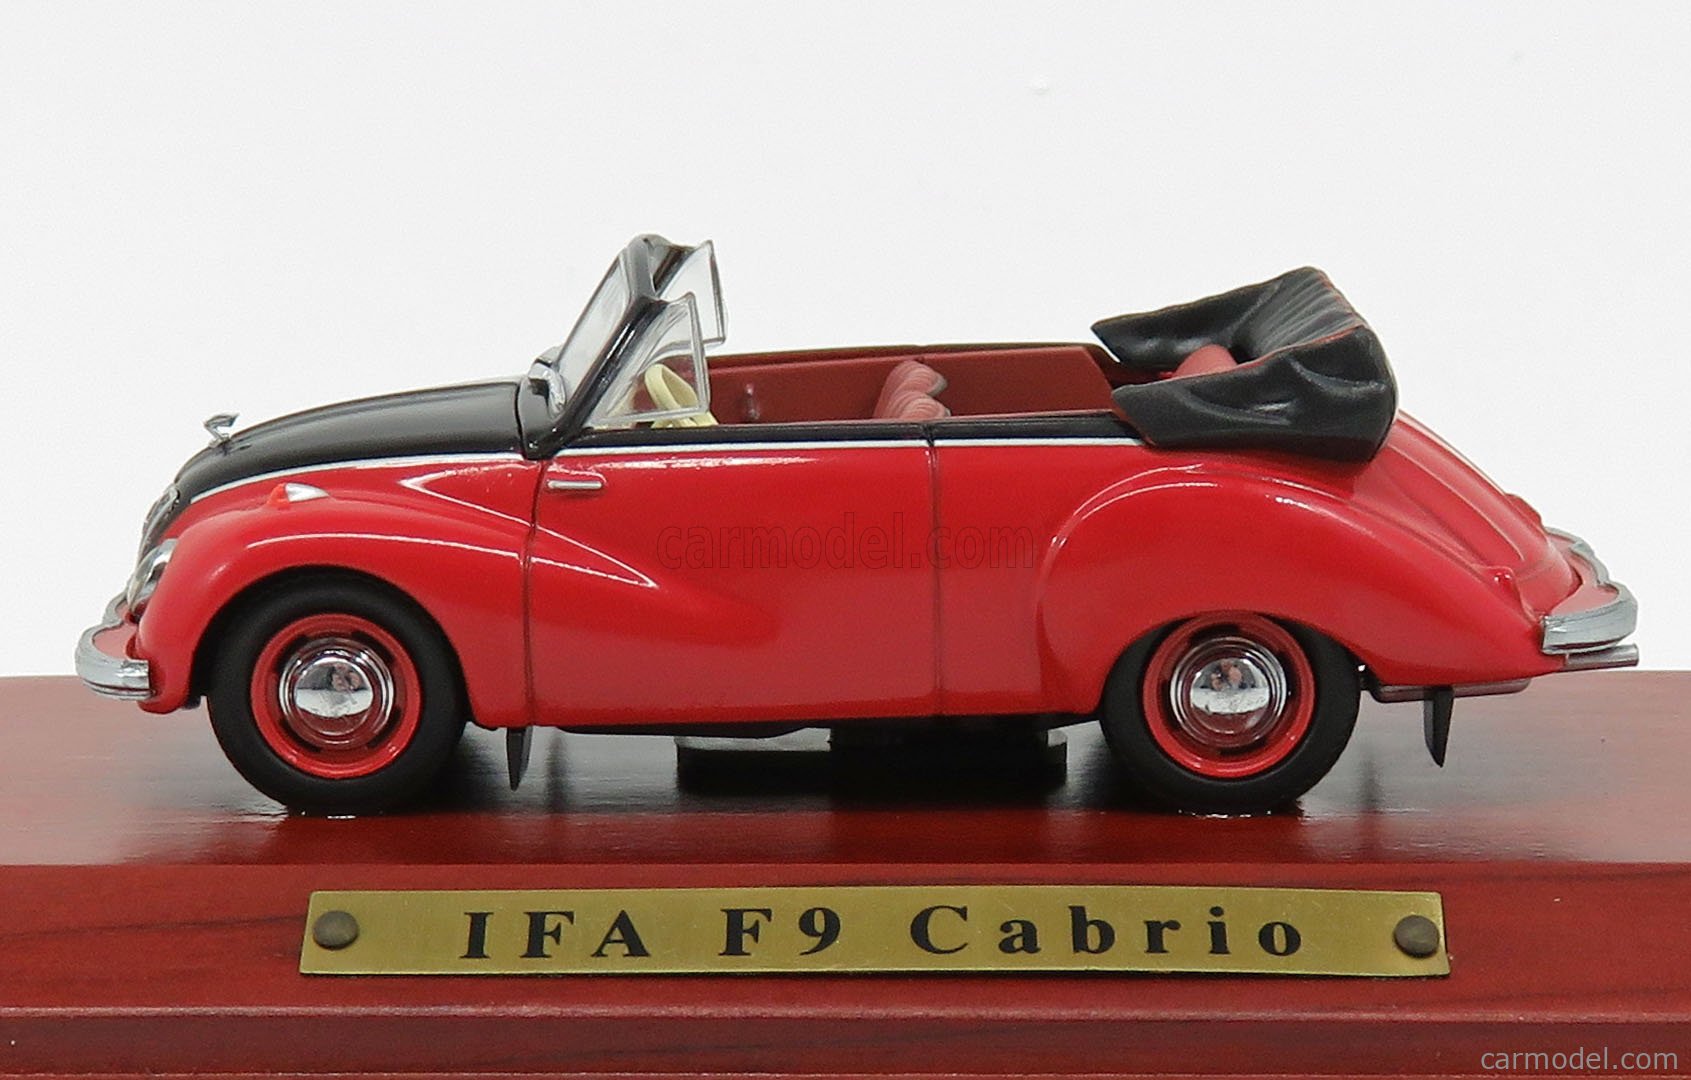 IFA F9 CABRIO SCALA 1/43 